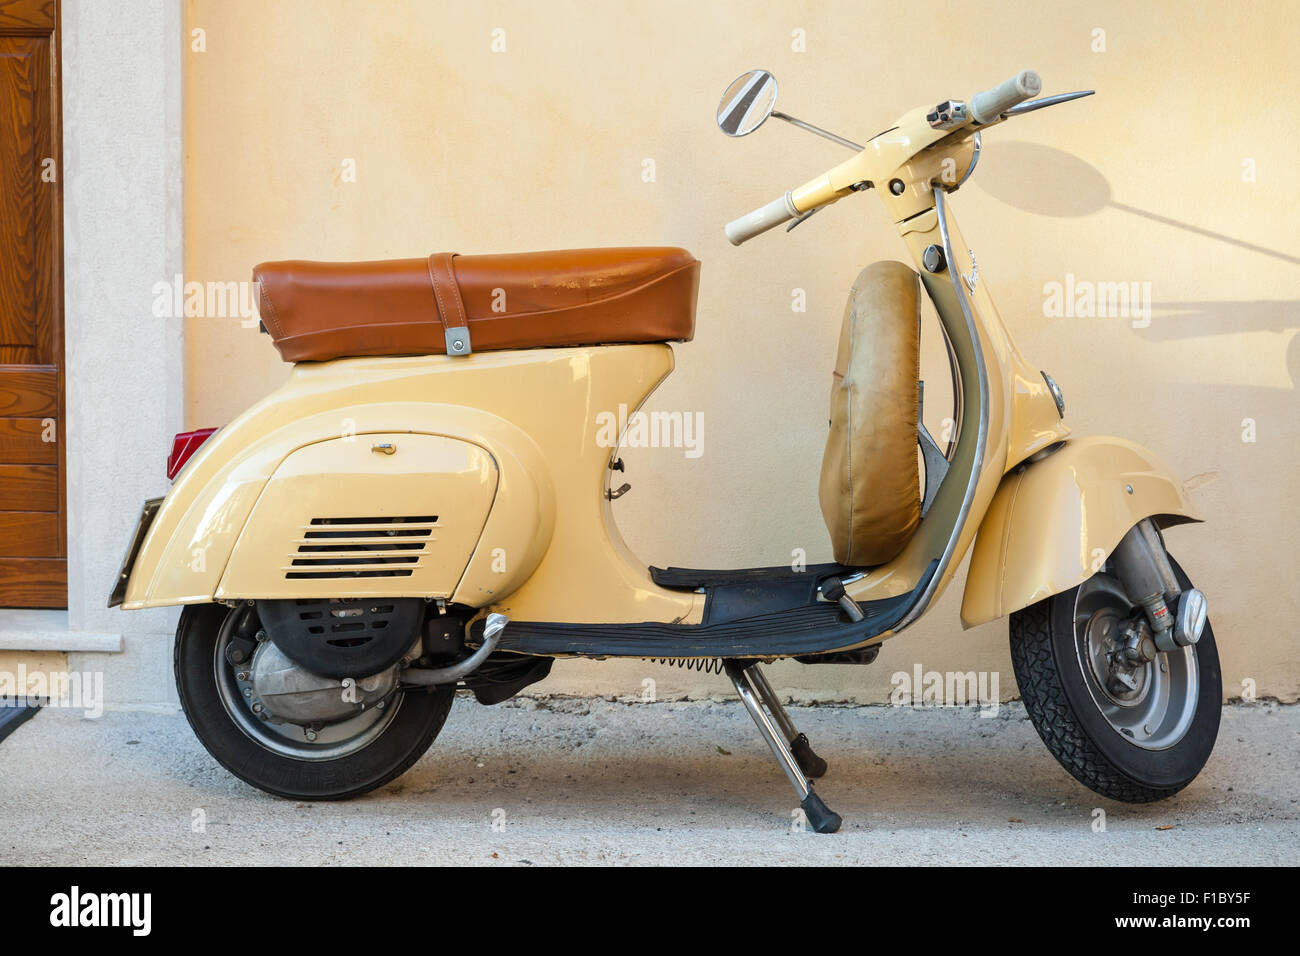 Gaeta, Italia - 19 agosto 2015: Classico giallo scooter Vespa parcheggiata sorge in prossimità della parete Foto Stock